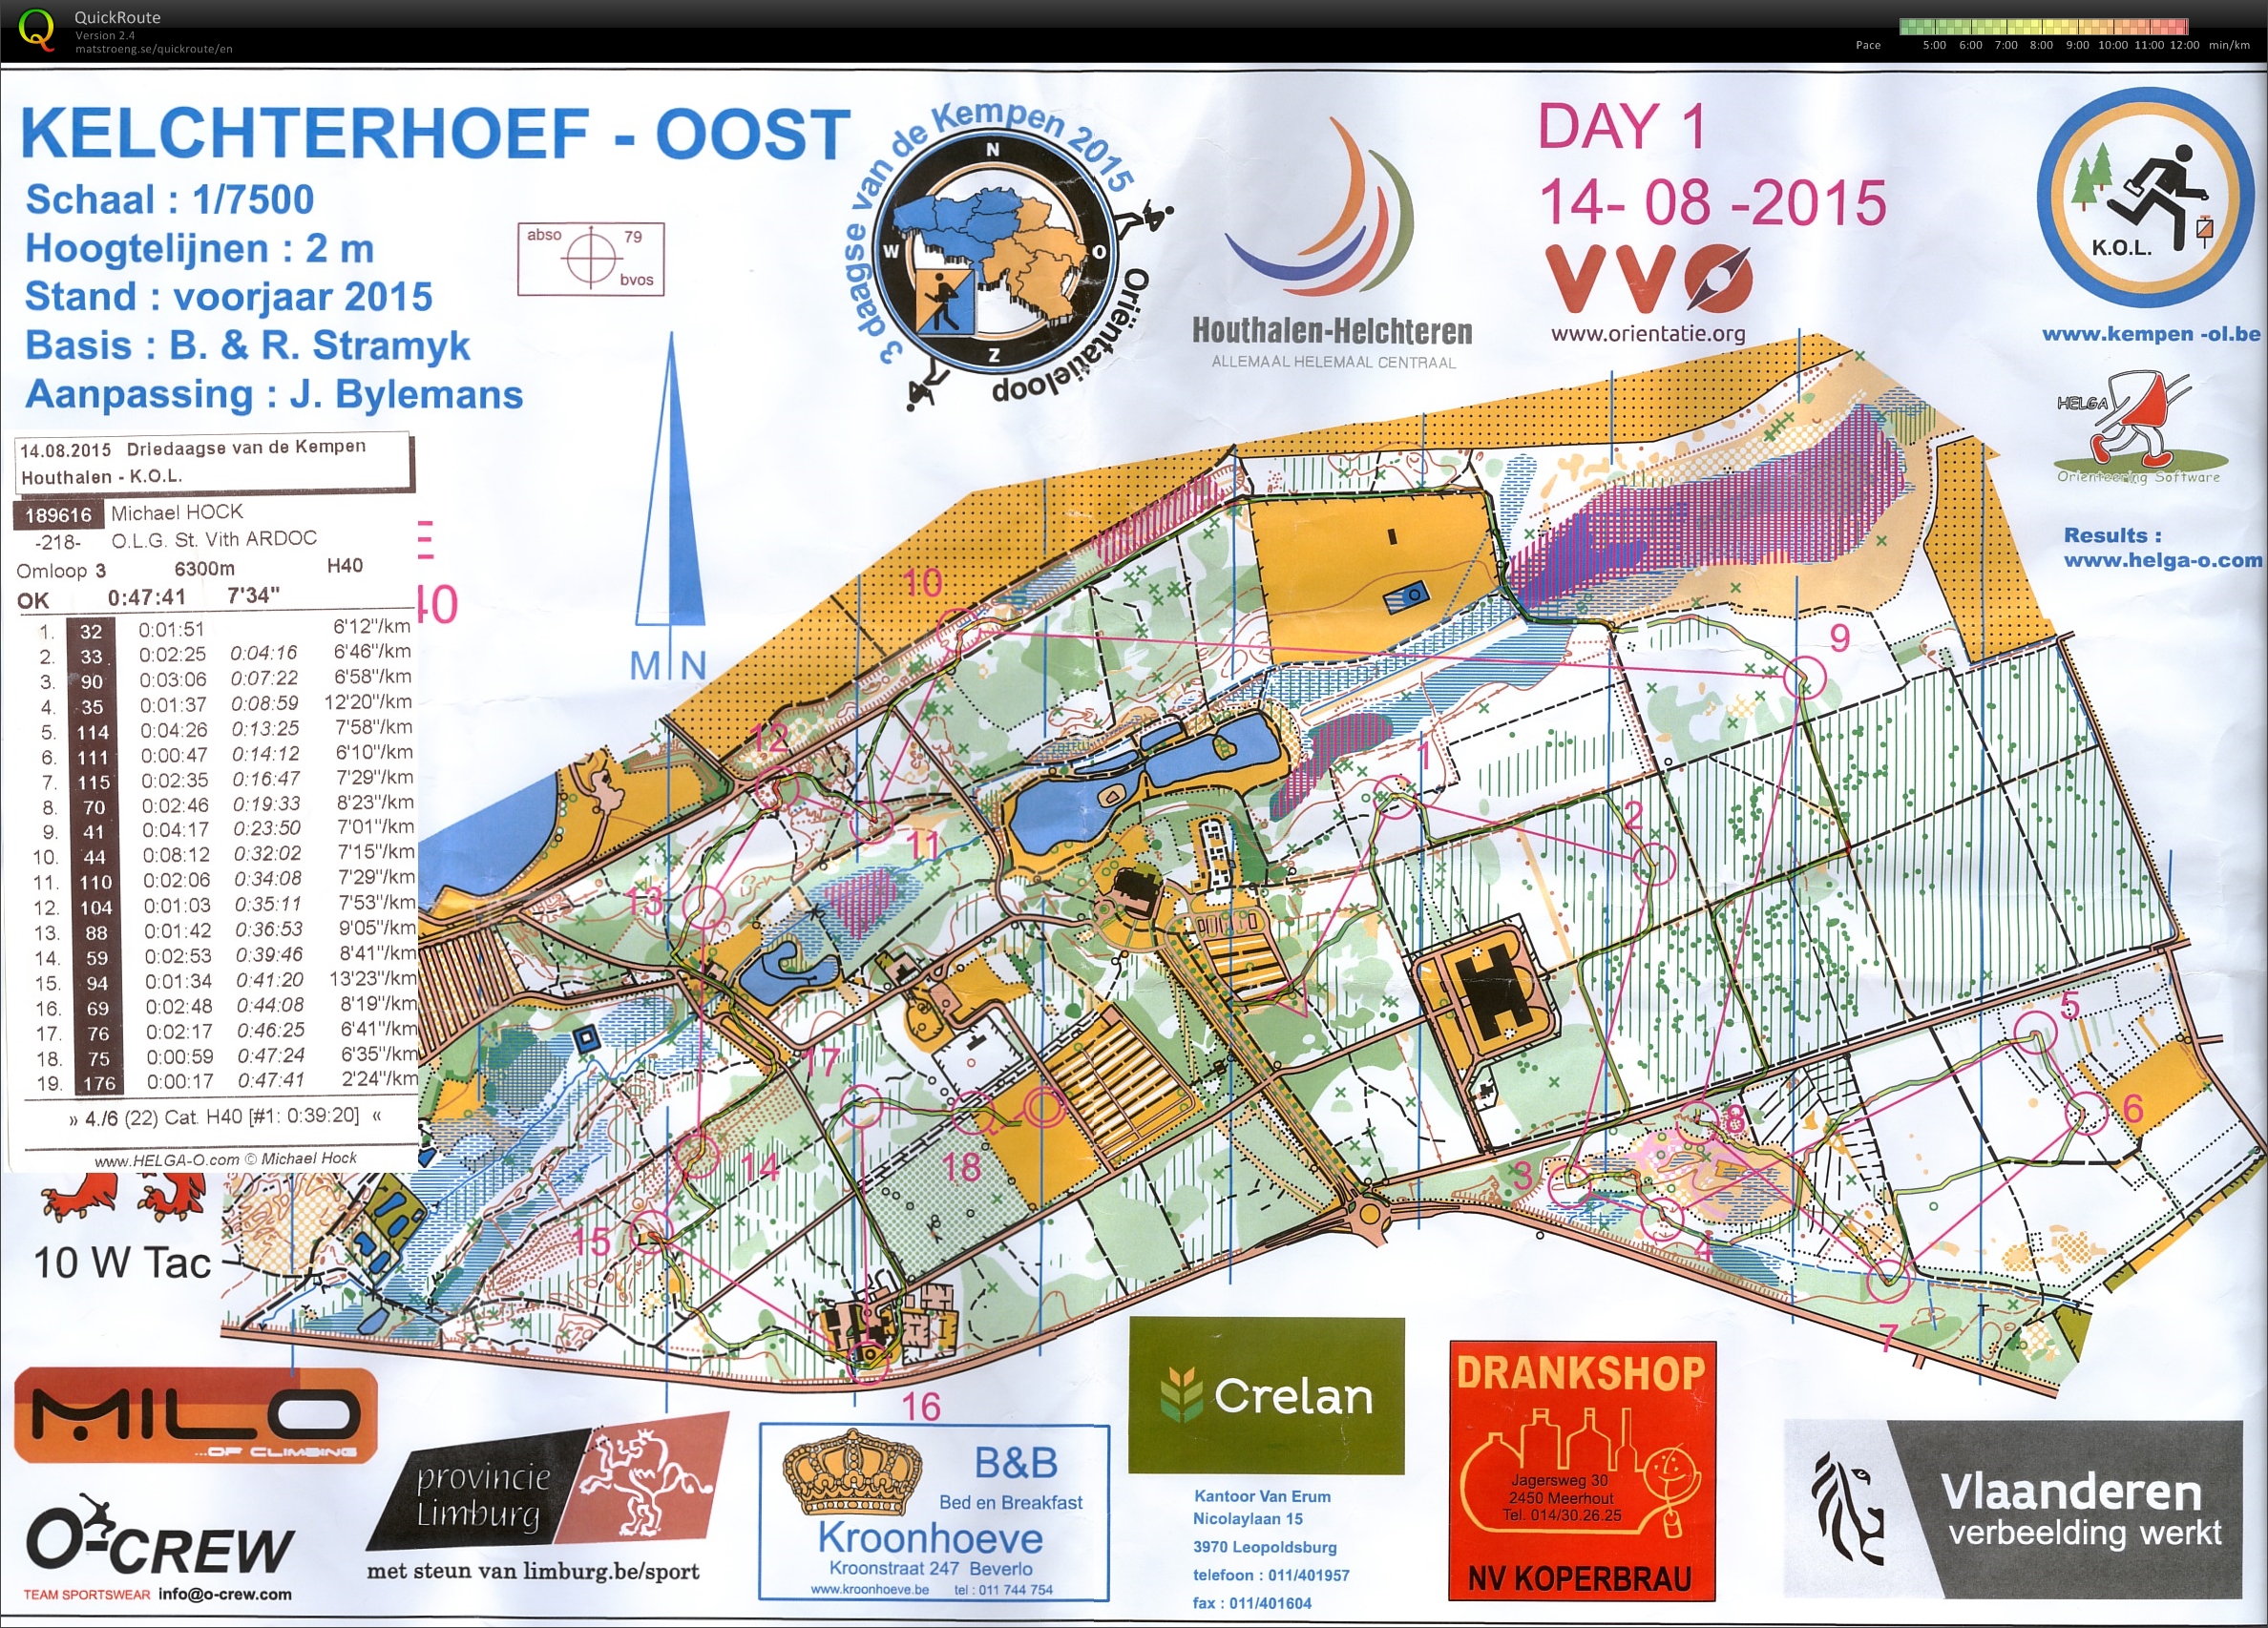 Driedaagse van de Kempen (14-08-2015)